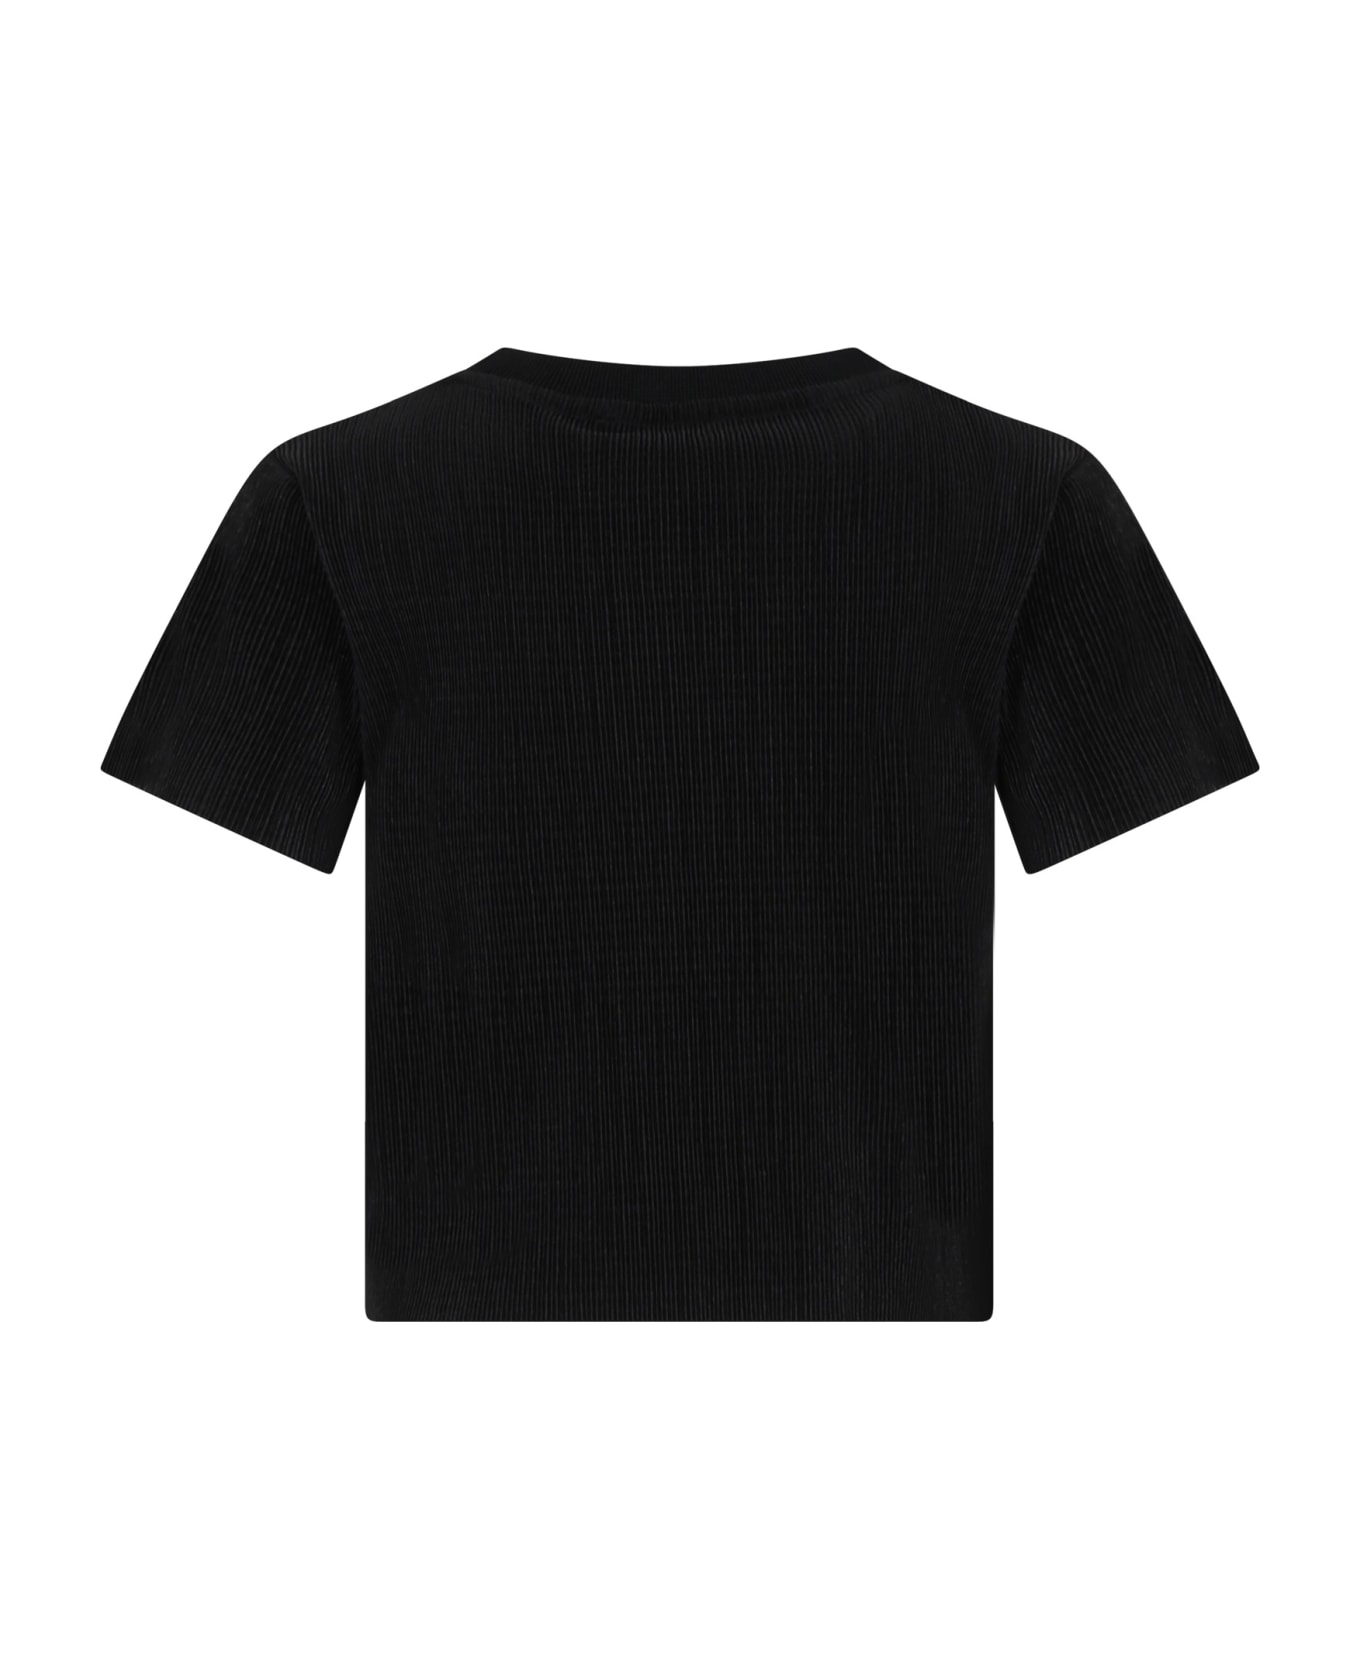 DKNY Black T-shirt For Girl - Black